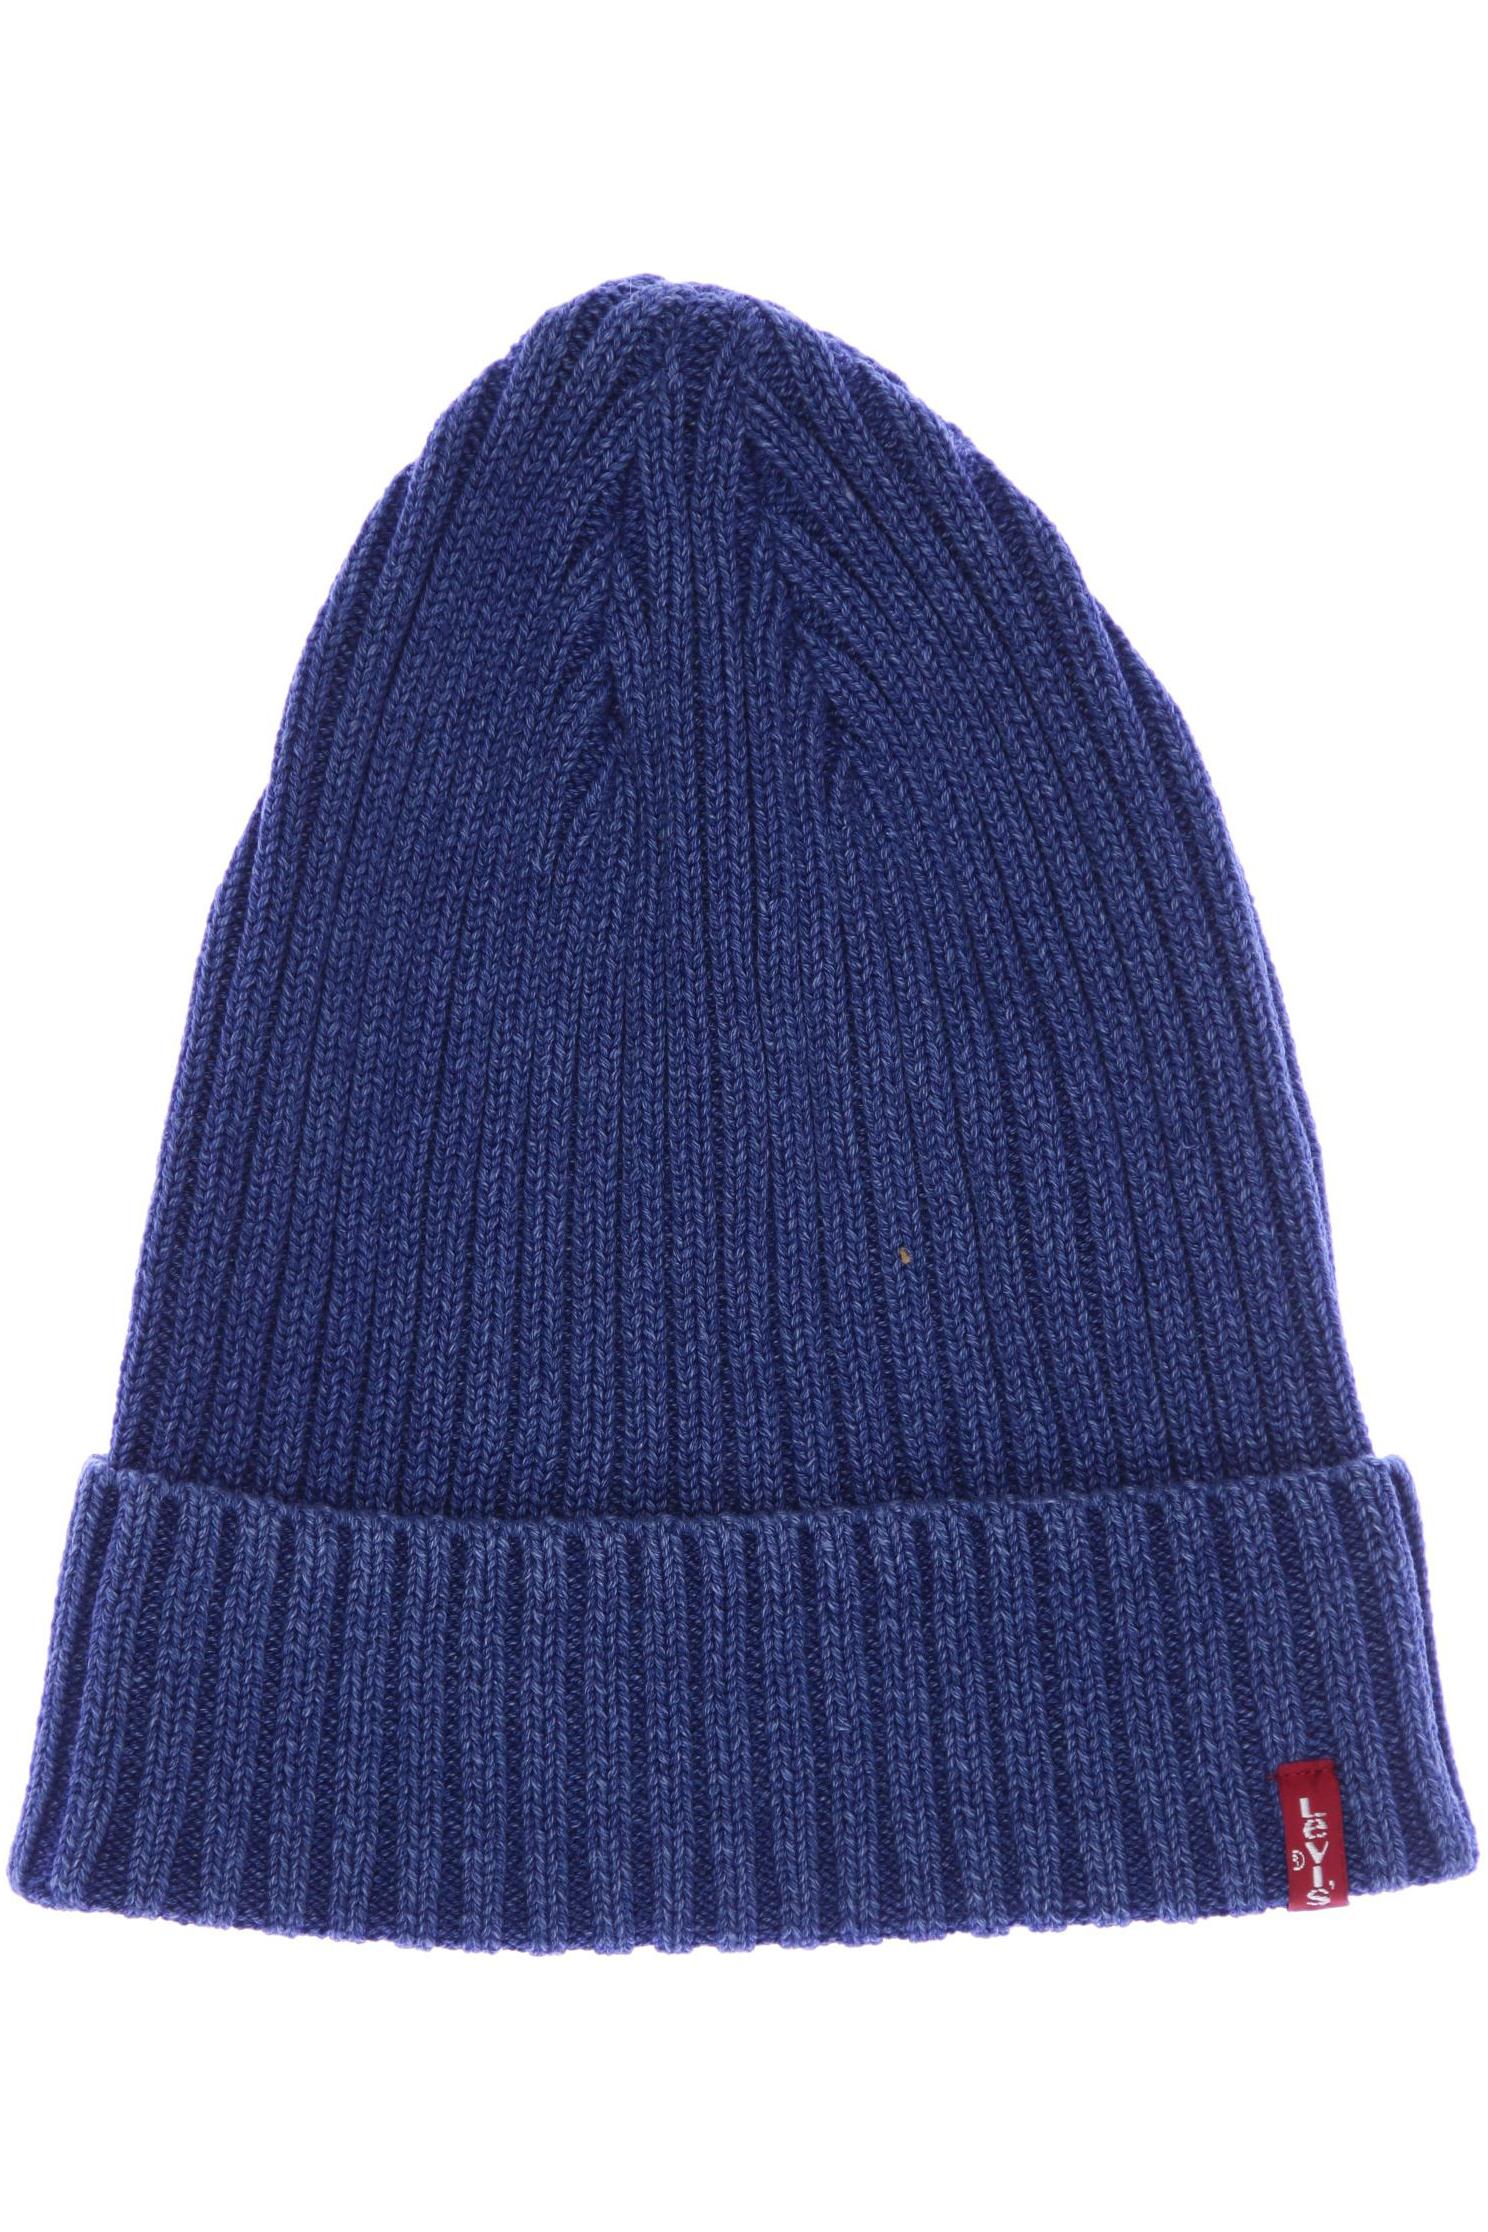 Levis Damen Hut/Mütze, blau, Gr. uni von Levis